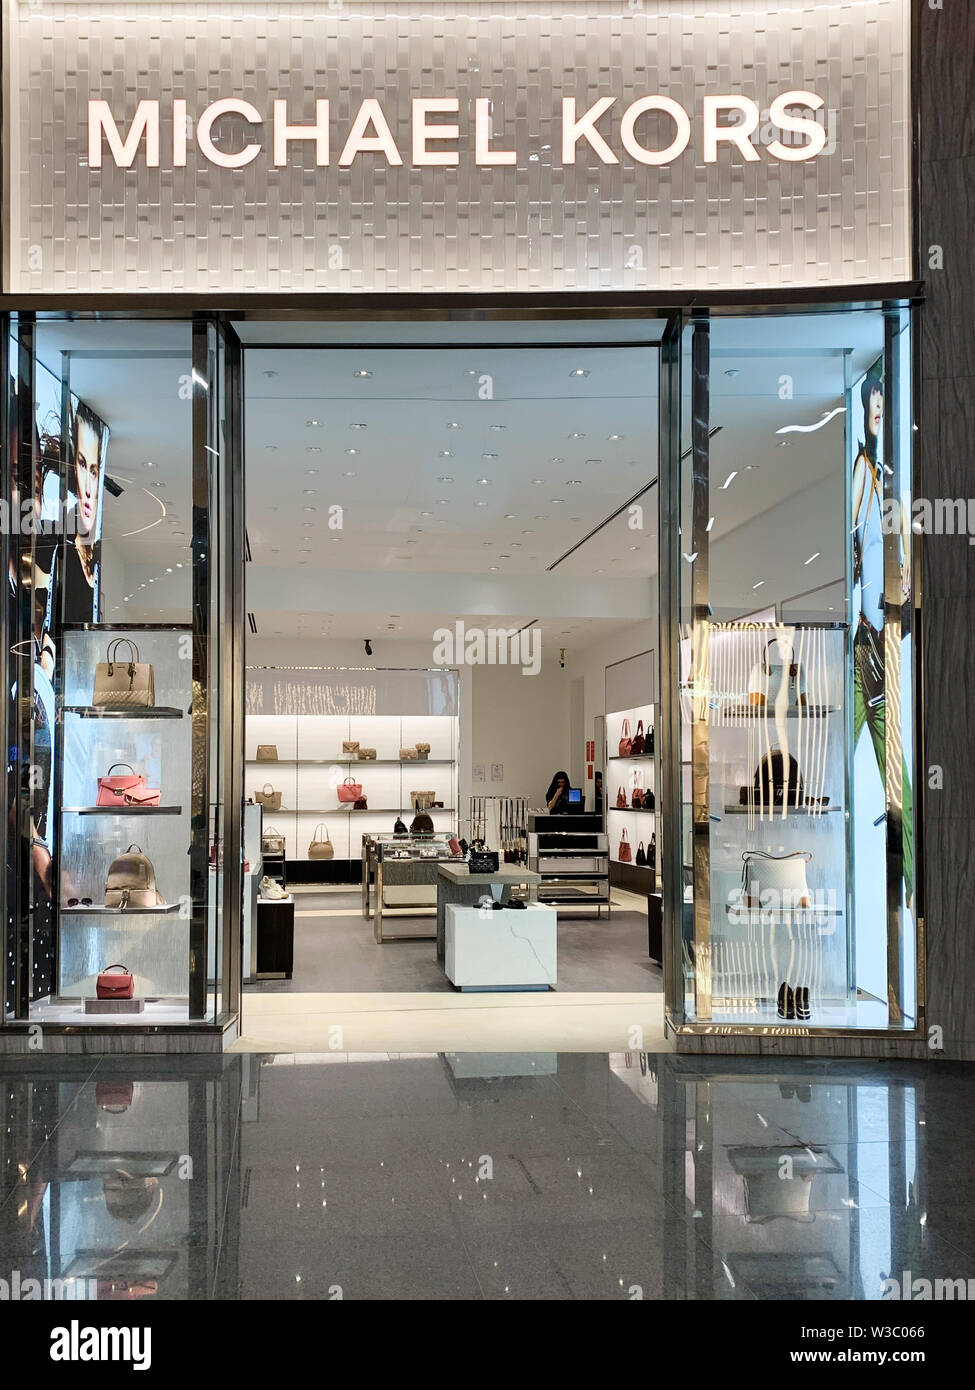 La moda americana sello llamado Michael Kors con su tienda, venta de bolsos y artículos de lujo. Estambul/ Turquía - abril de 2019 Foto de stock